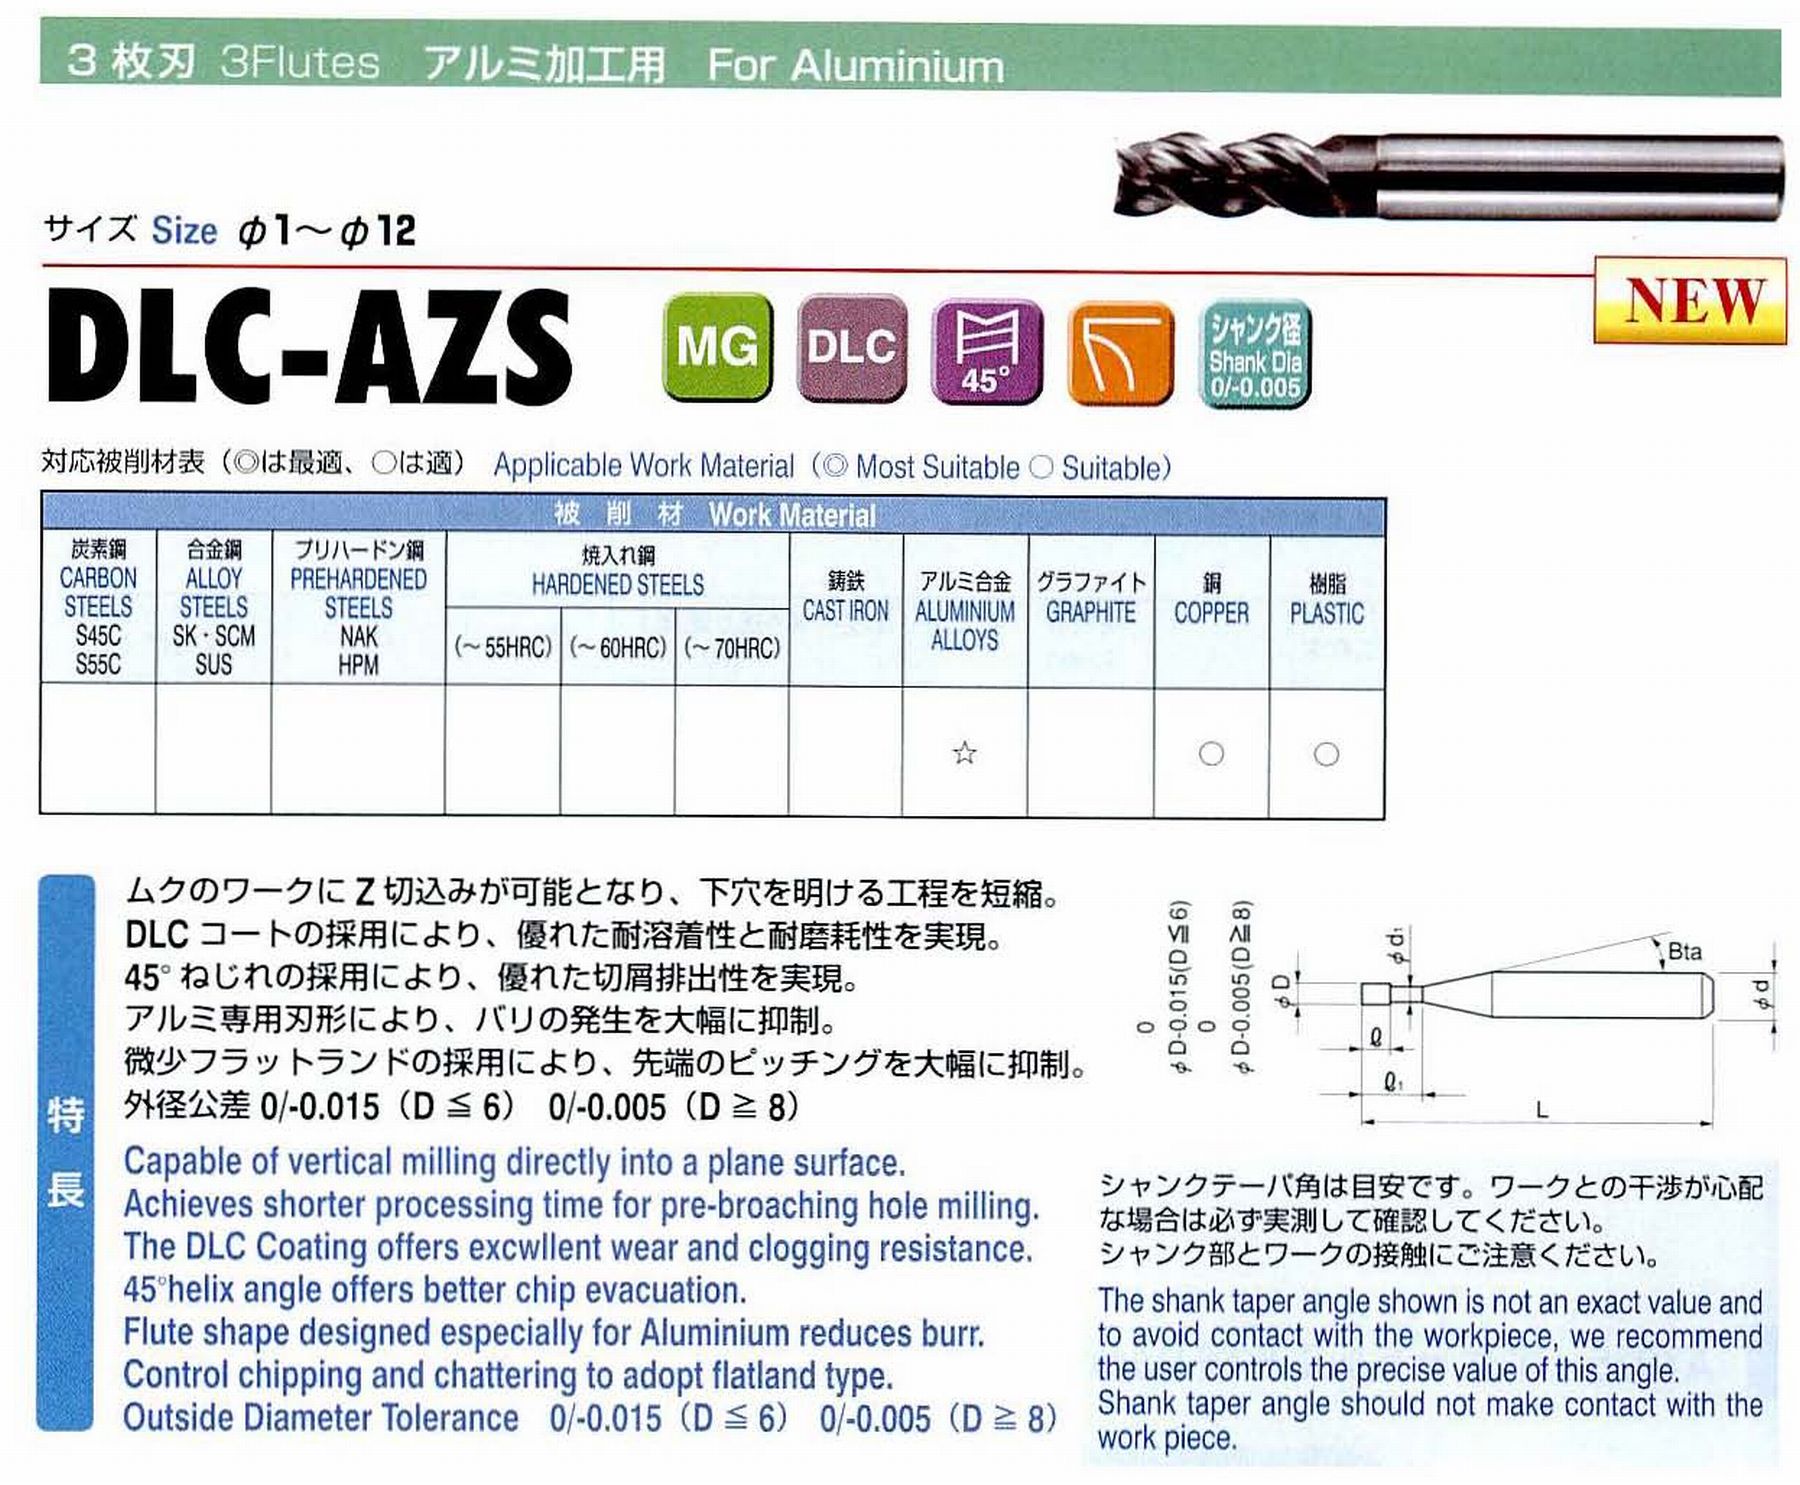 ユニオンツール 3枚刃 DLC-AZS3080-240 外径8 有効長24 刃長16 首径7.82 シャンクテーパ角- 全長80 シャンク径8